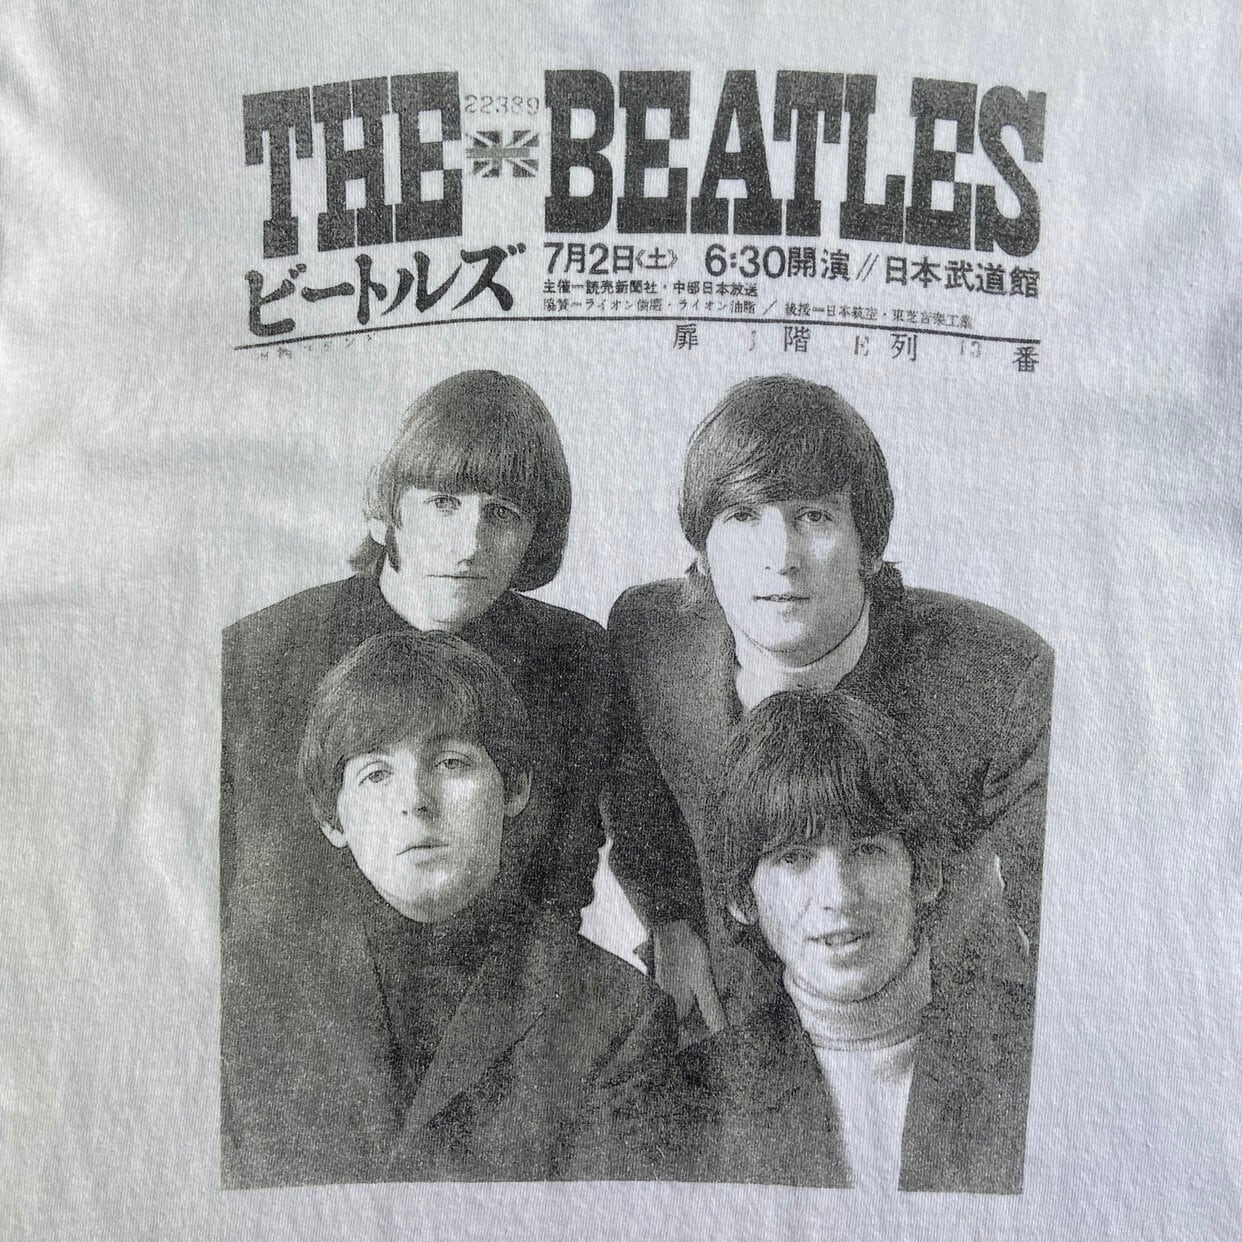 The Beatles ビートルズ　Tシャツ　ホワイト　白